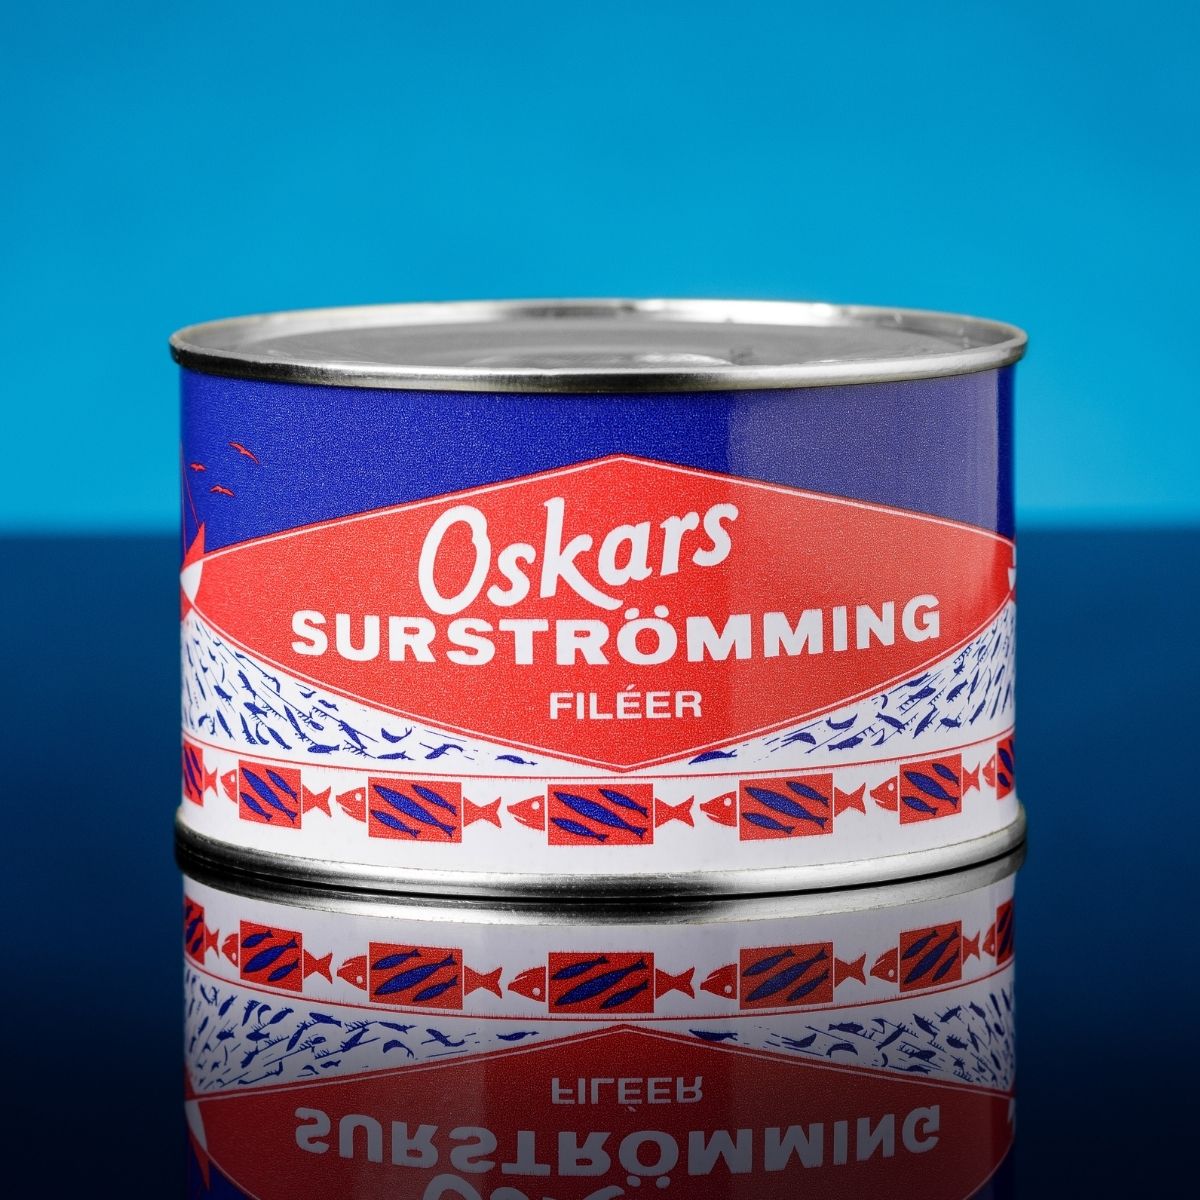 Buy Oskar's surströmming Online